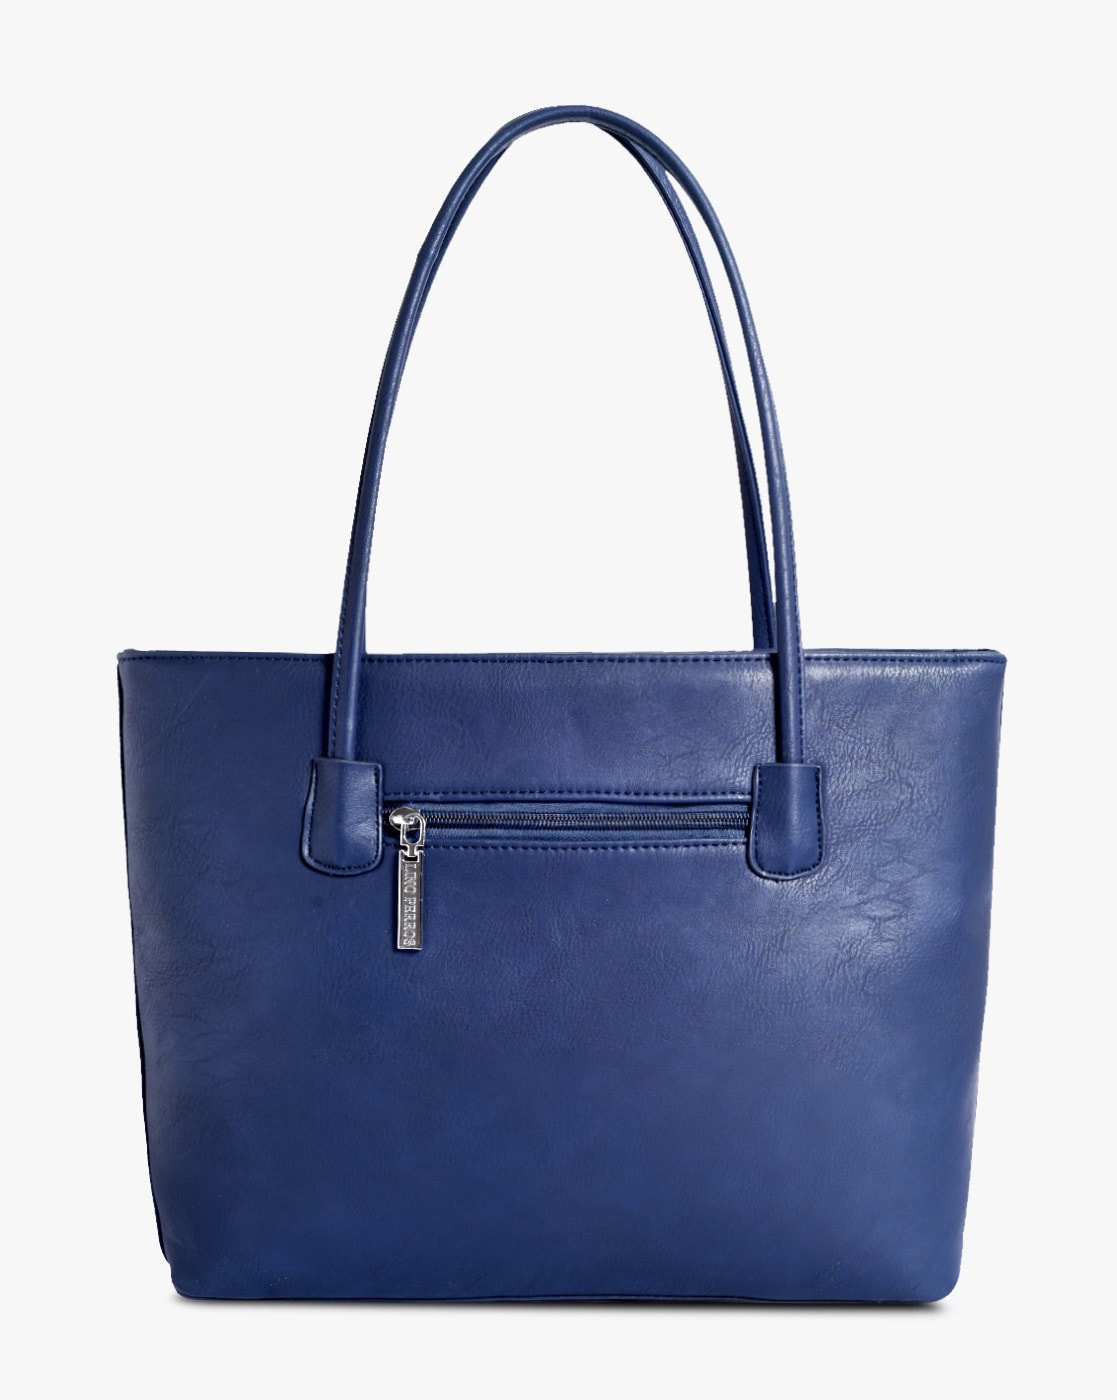 navy blue handbags